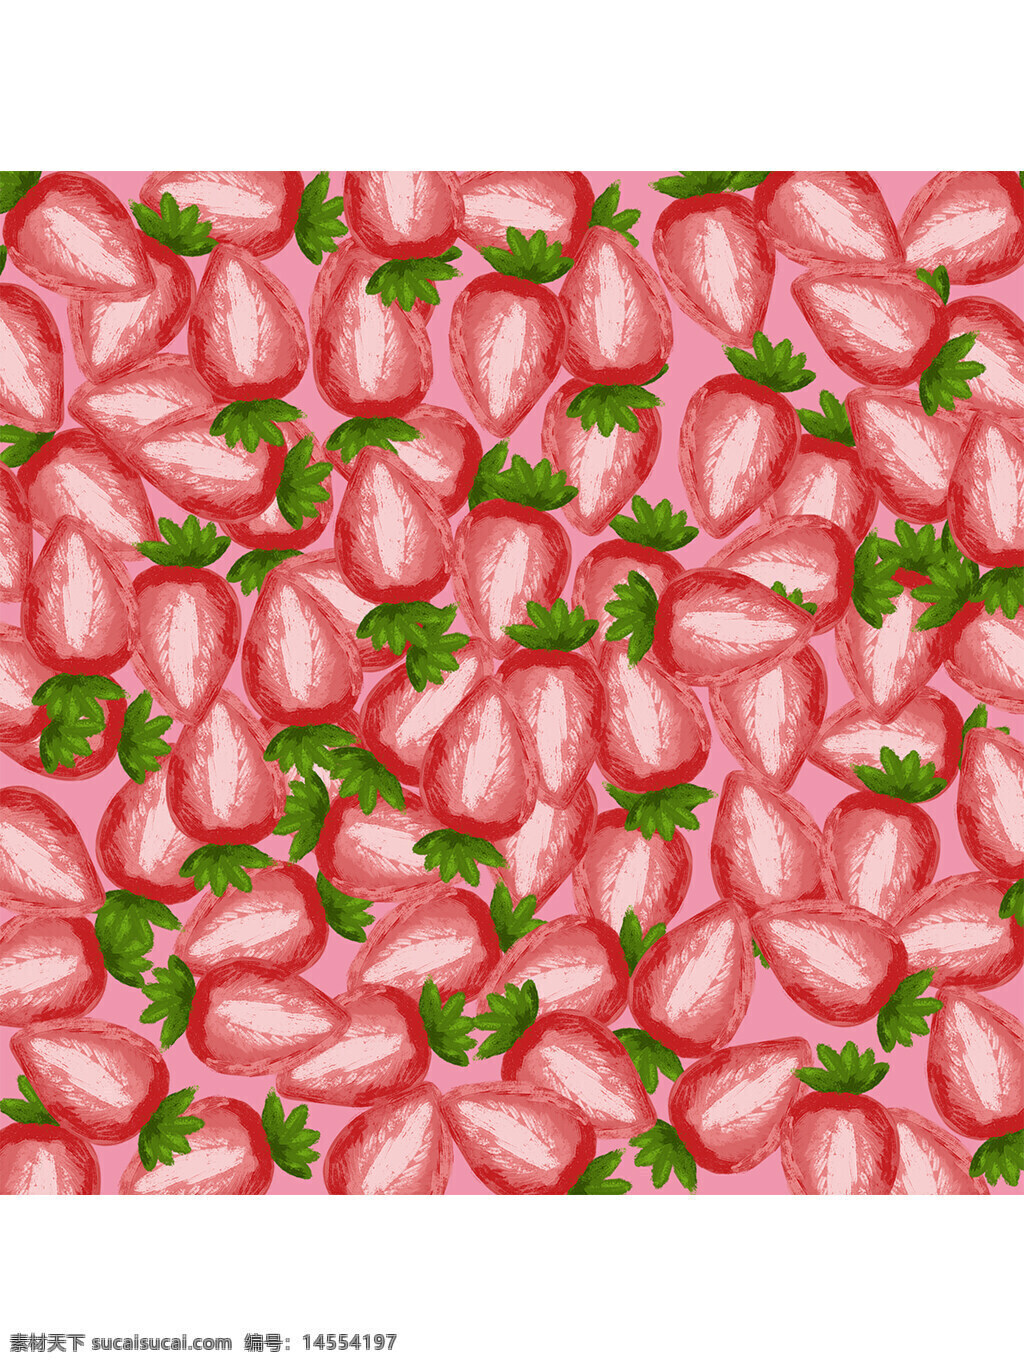 草莓 背景 水果 水果原料 果汁